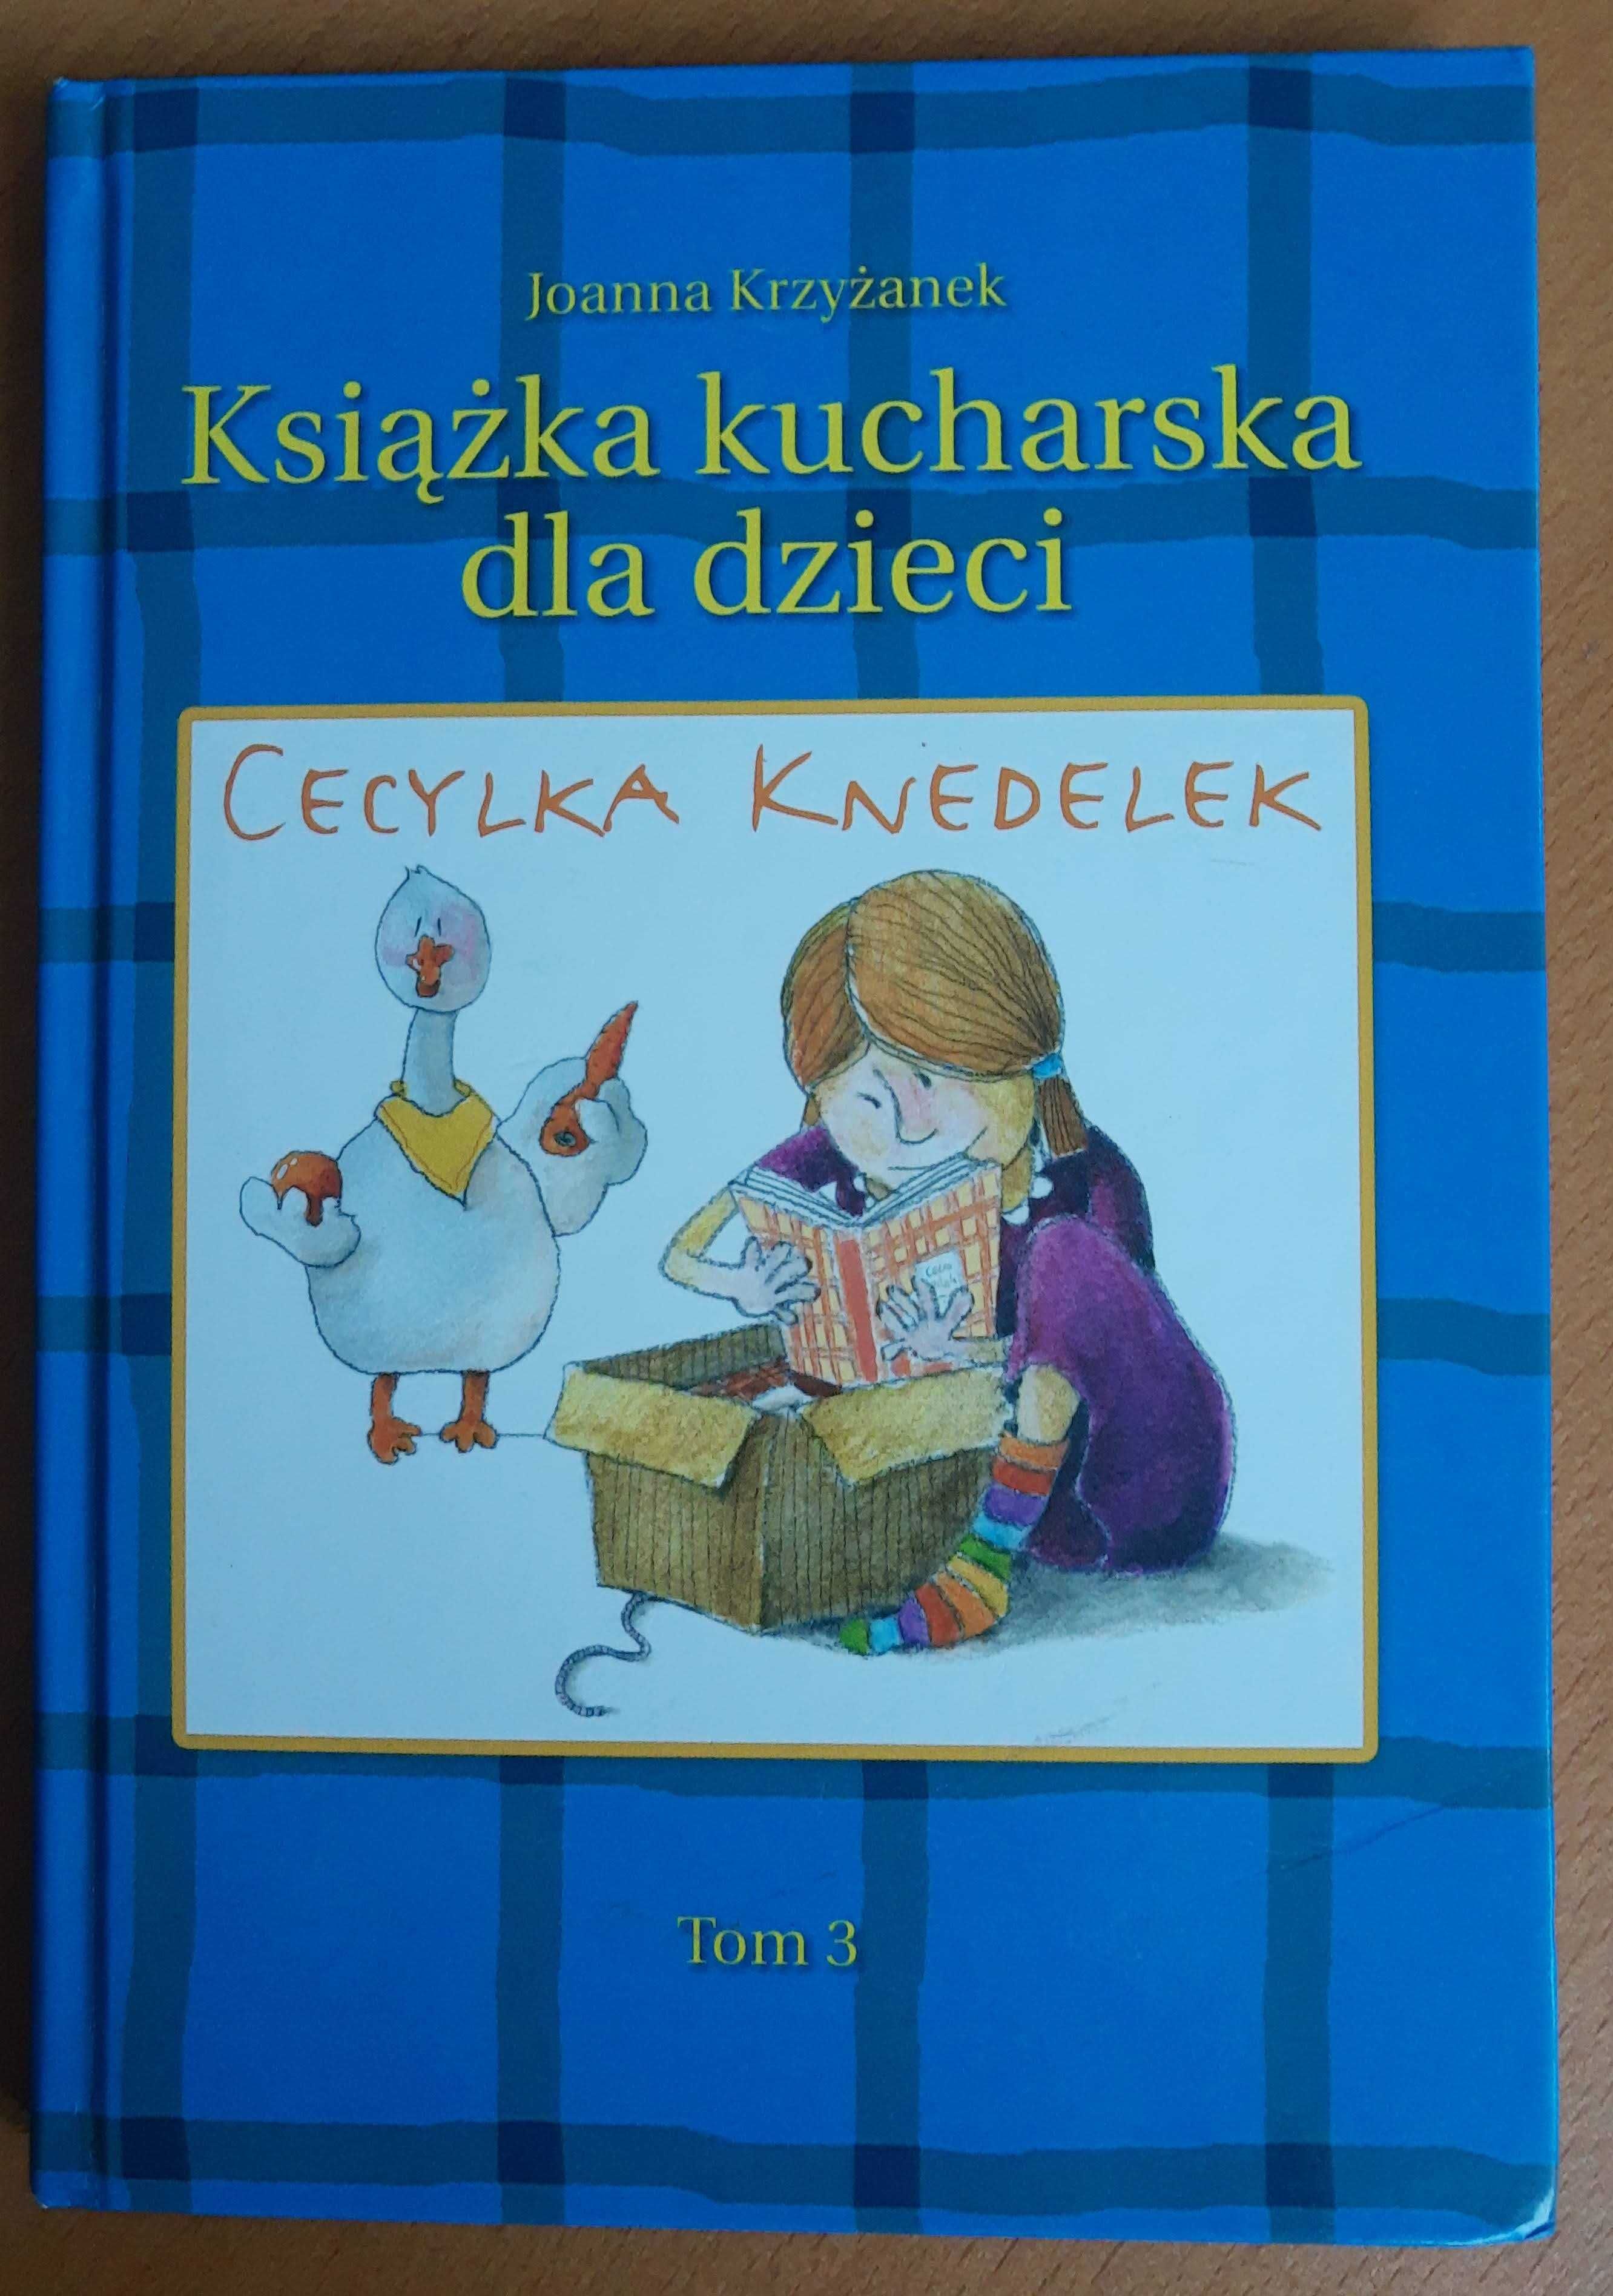 Joanna Krzyżanek "Książka kucharska dla dzieci Cecylka Knedelek" t. 3